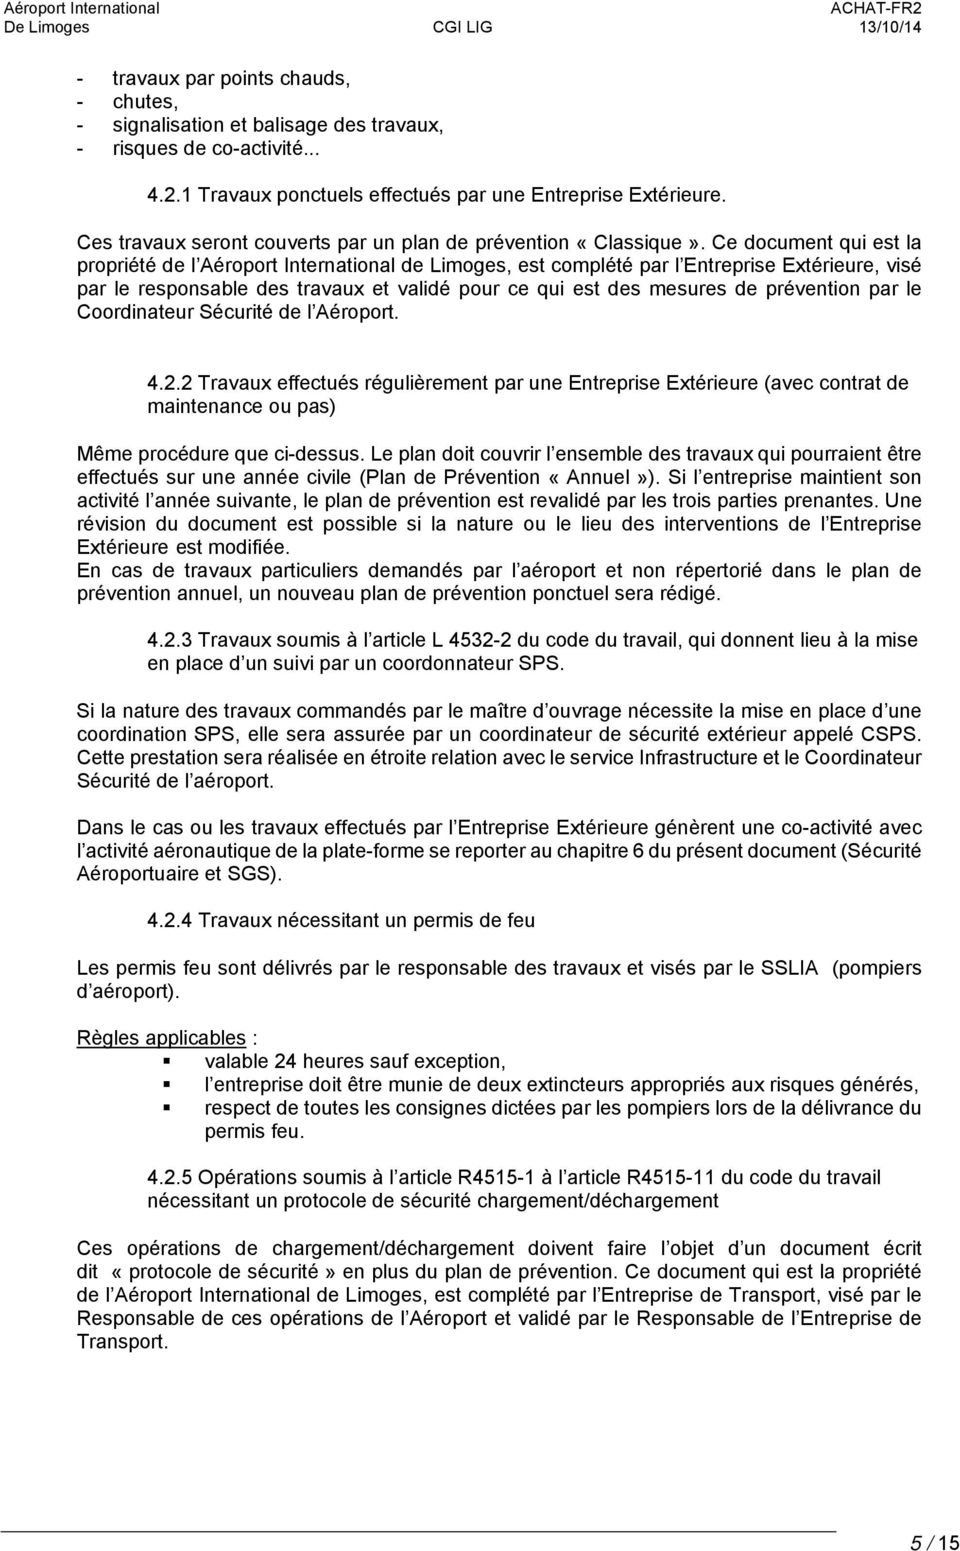 Ce document qui est la propriété de l Aéroport International de Limoges, est complété par l Entreprise Extérieure, visé par le responsable des travaux et validé pour ce qui est des mesures de